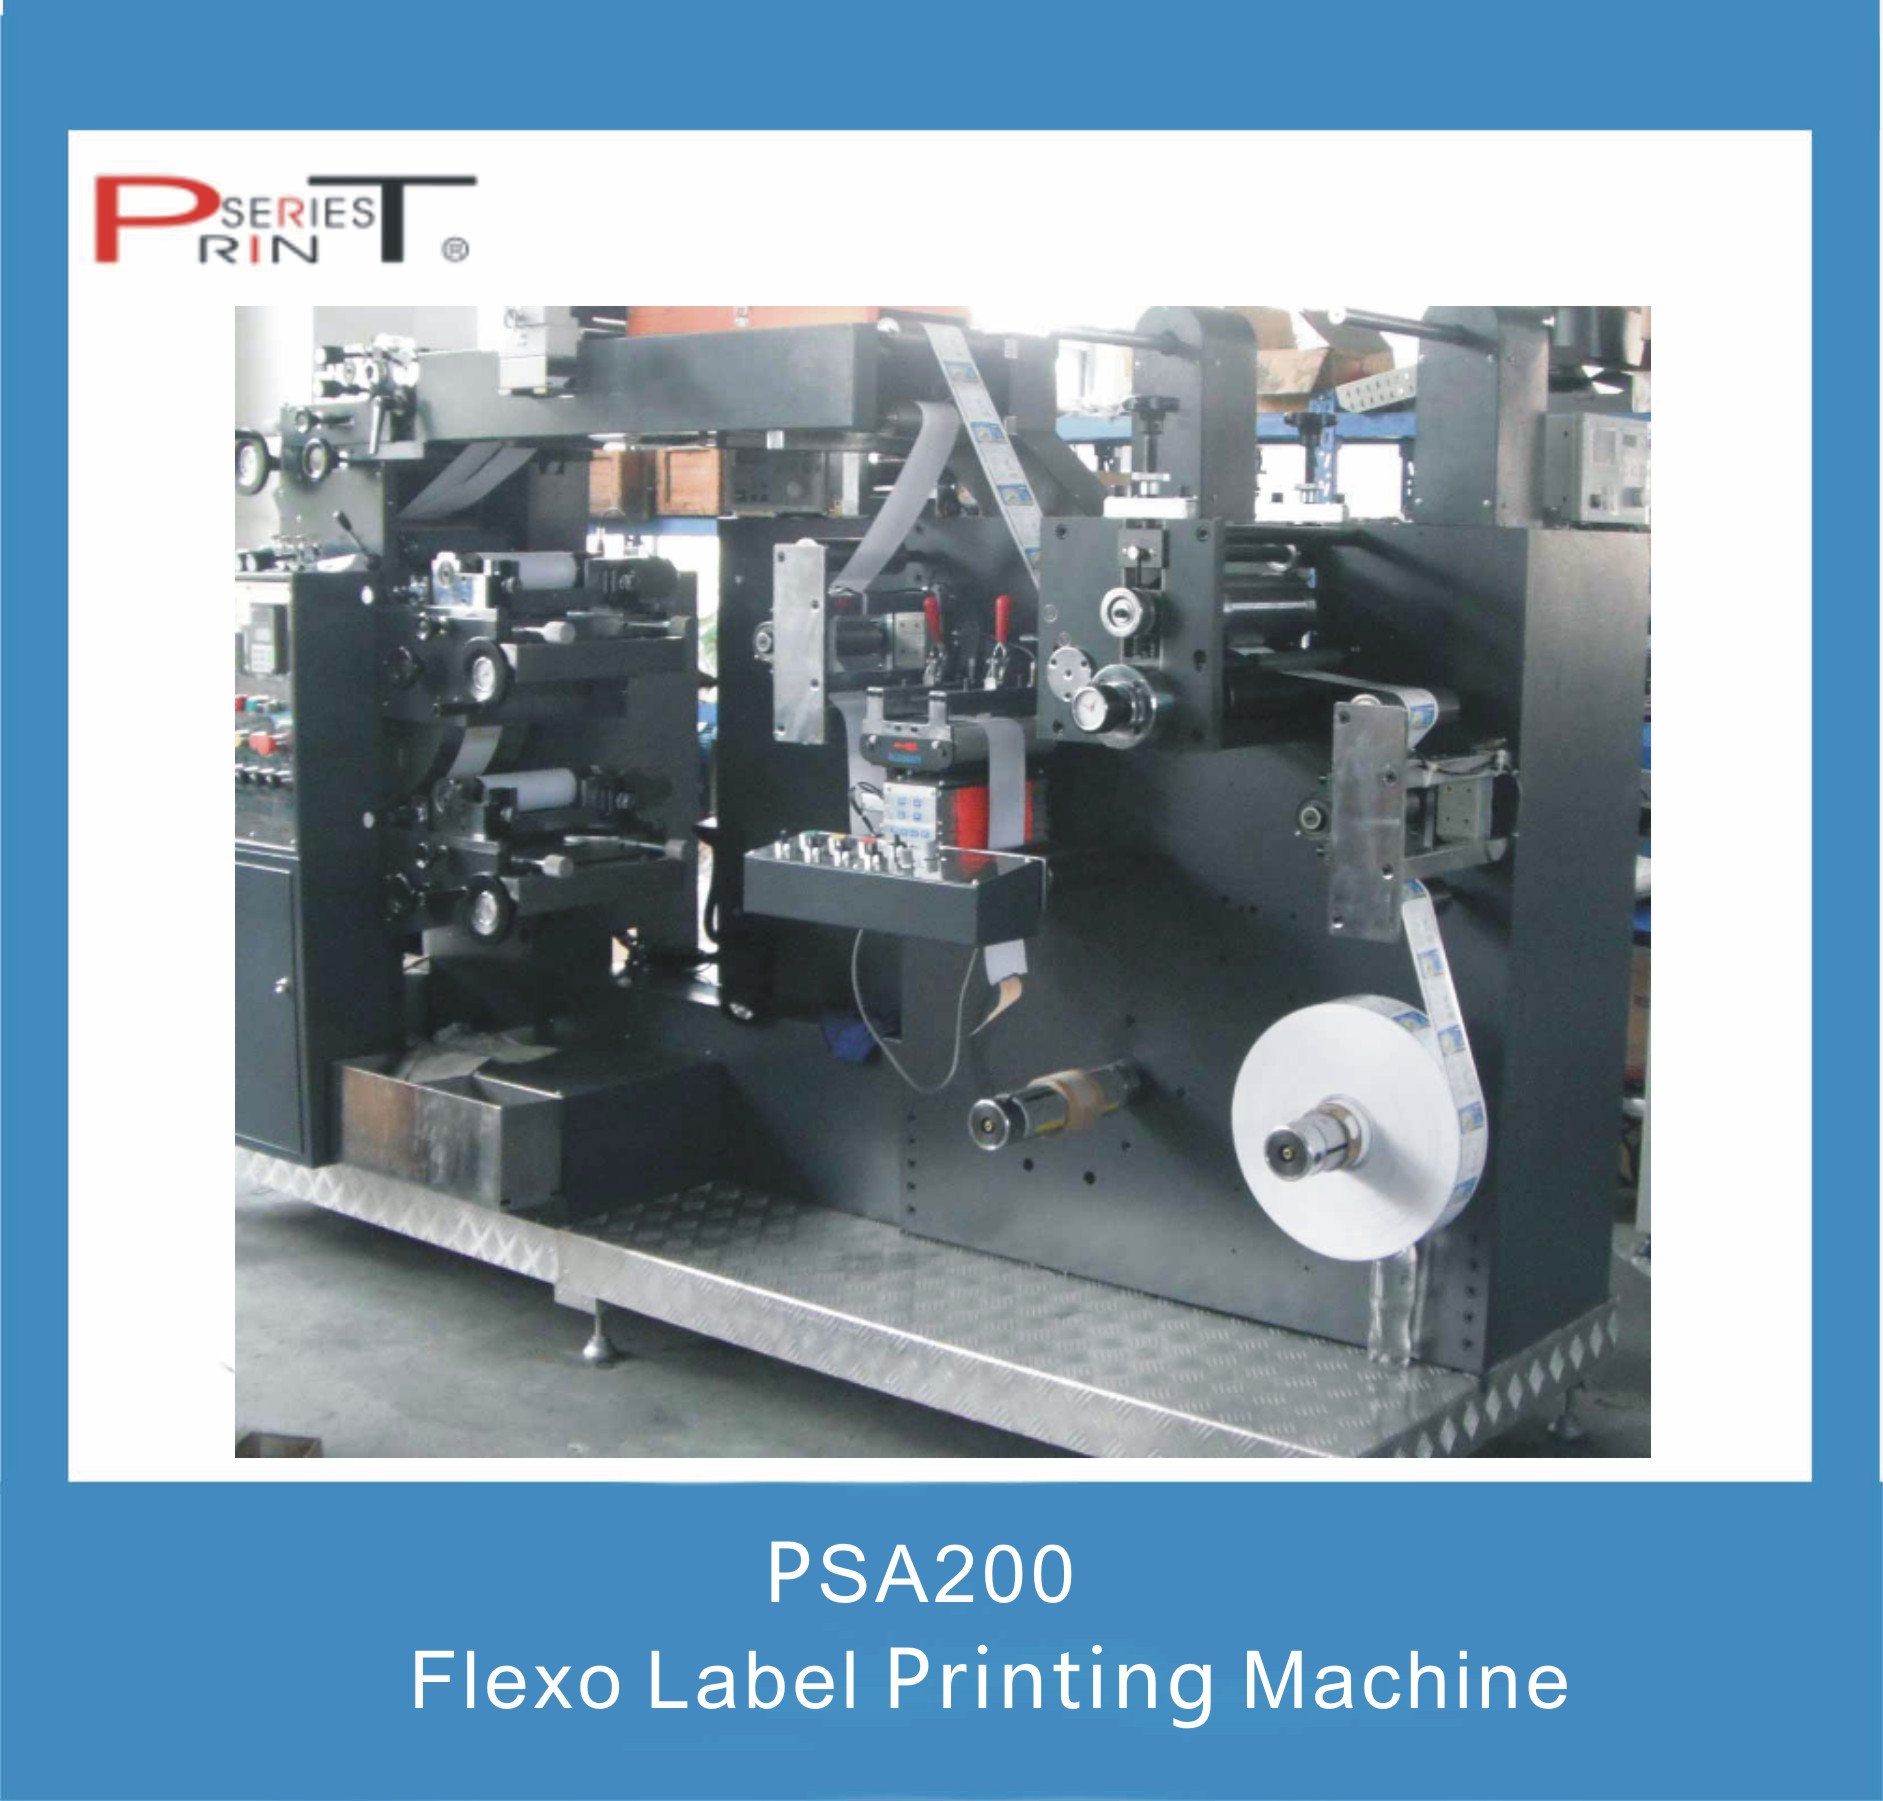 Label Printing Machine, Flexo/Screen/Rotary Printing Machine, Label Printing Equipment (Flexographic Printing Equipment)